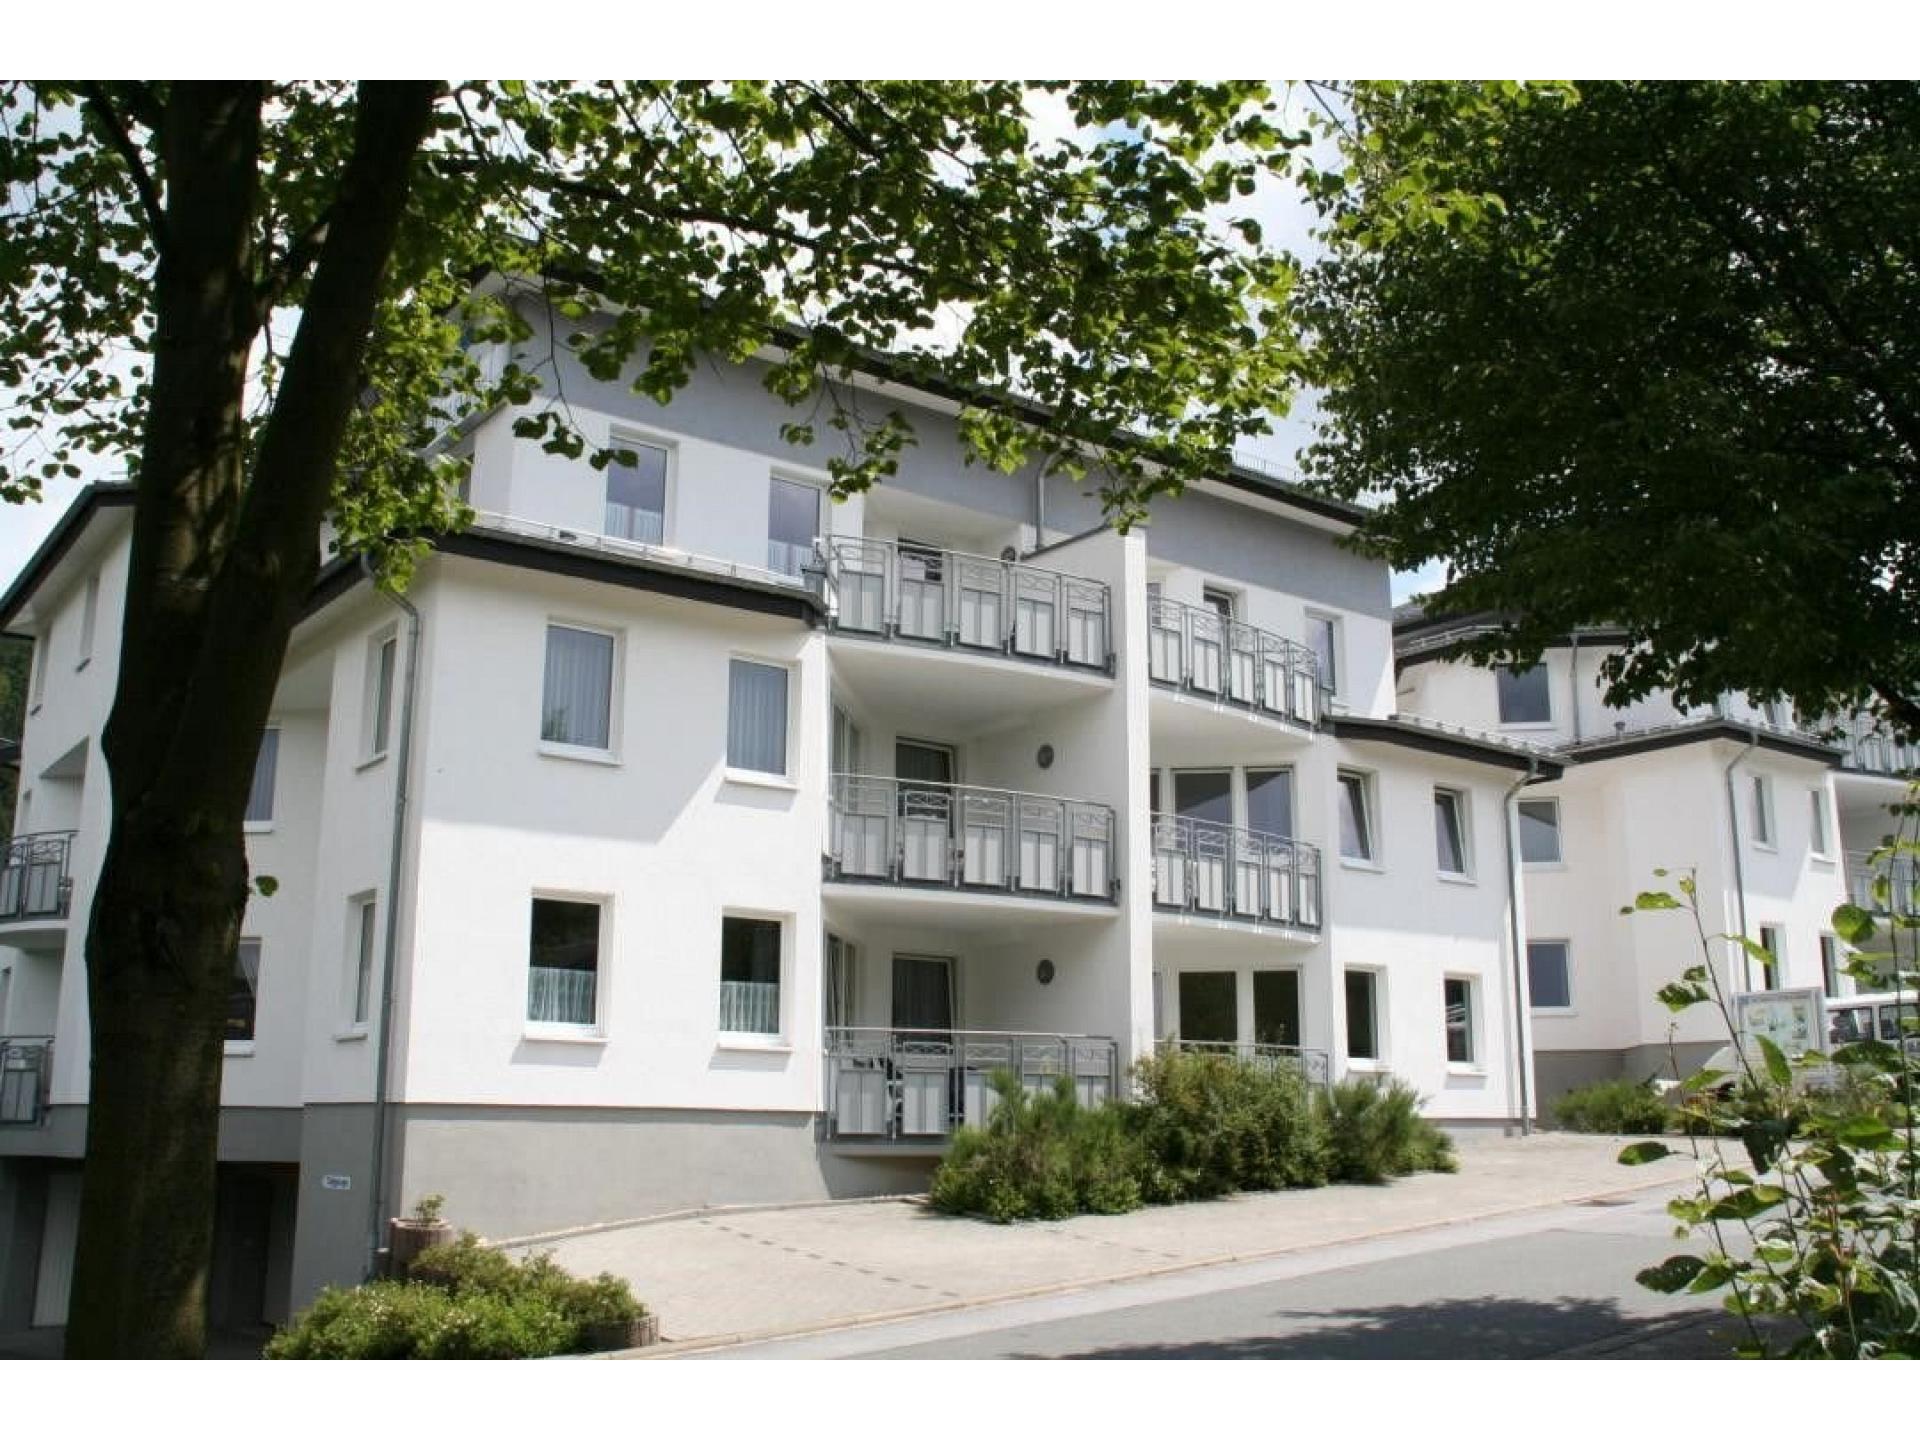 Residenz Mhlenberg